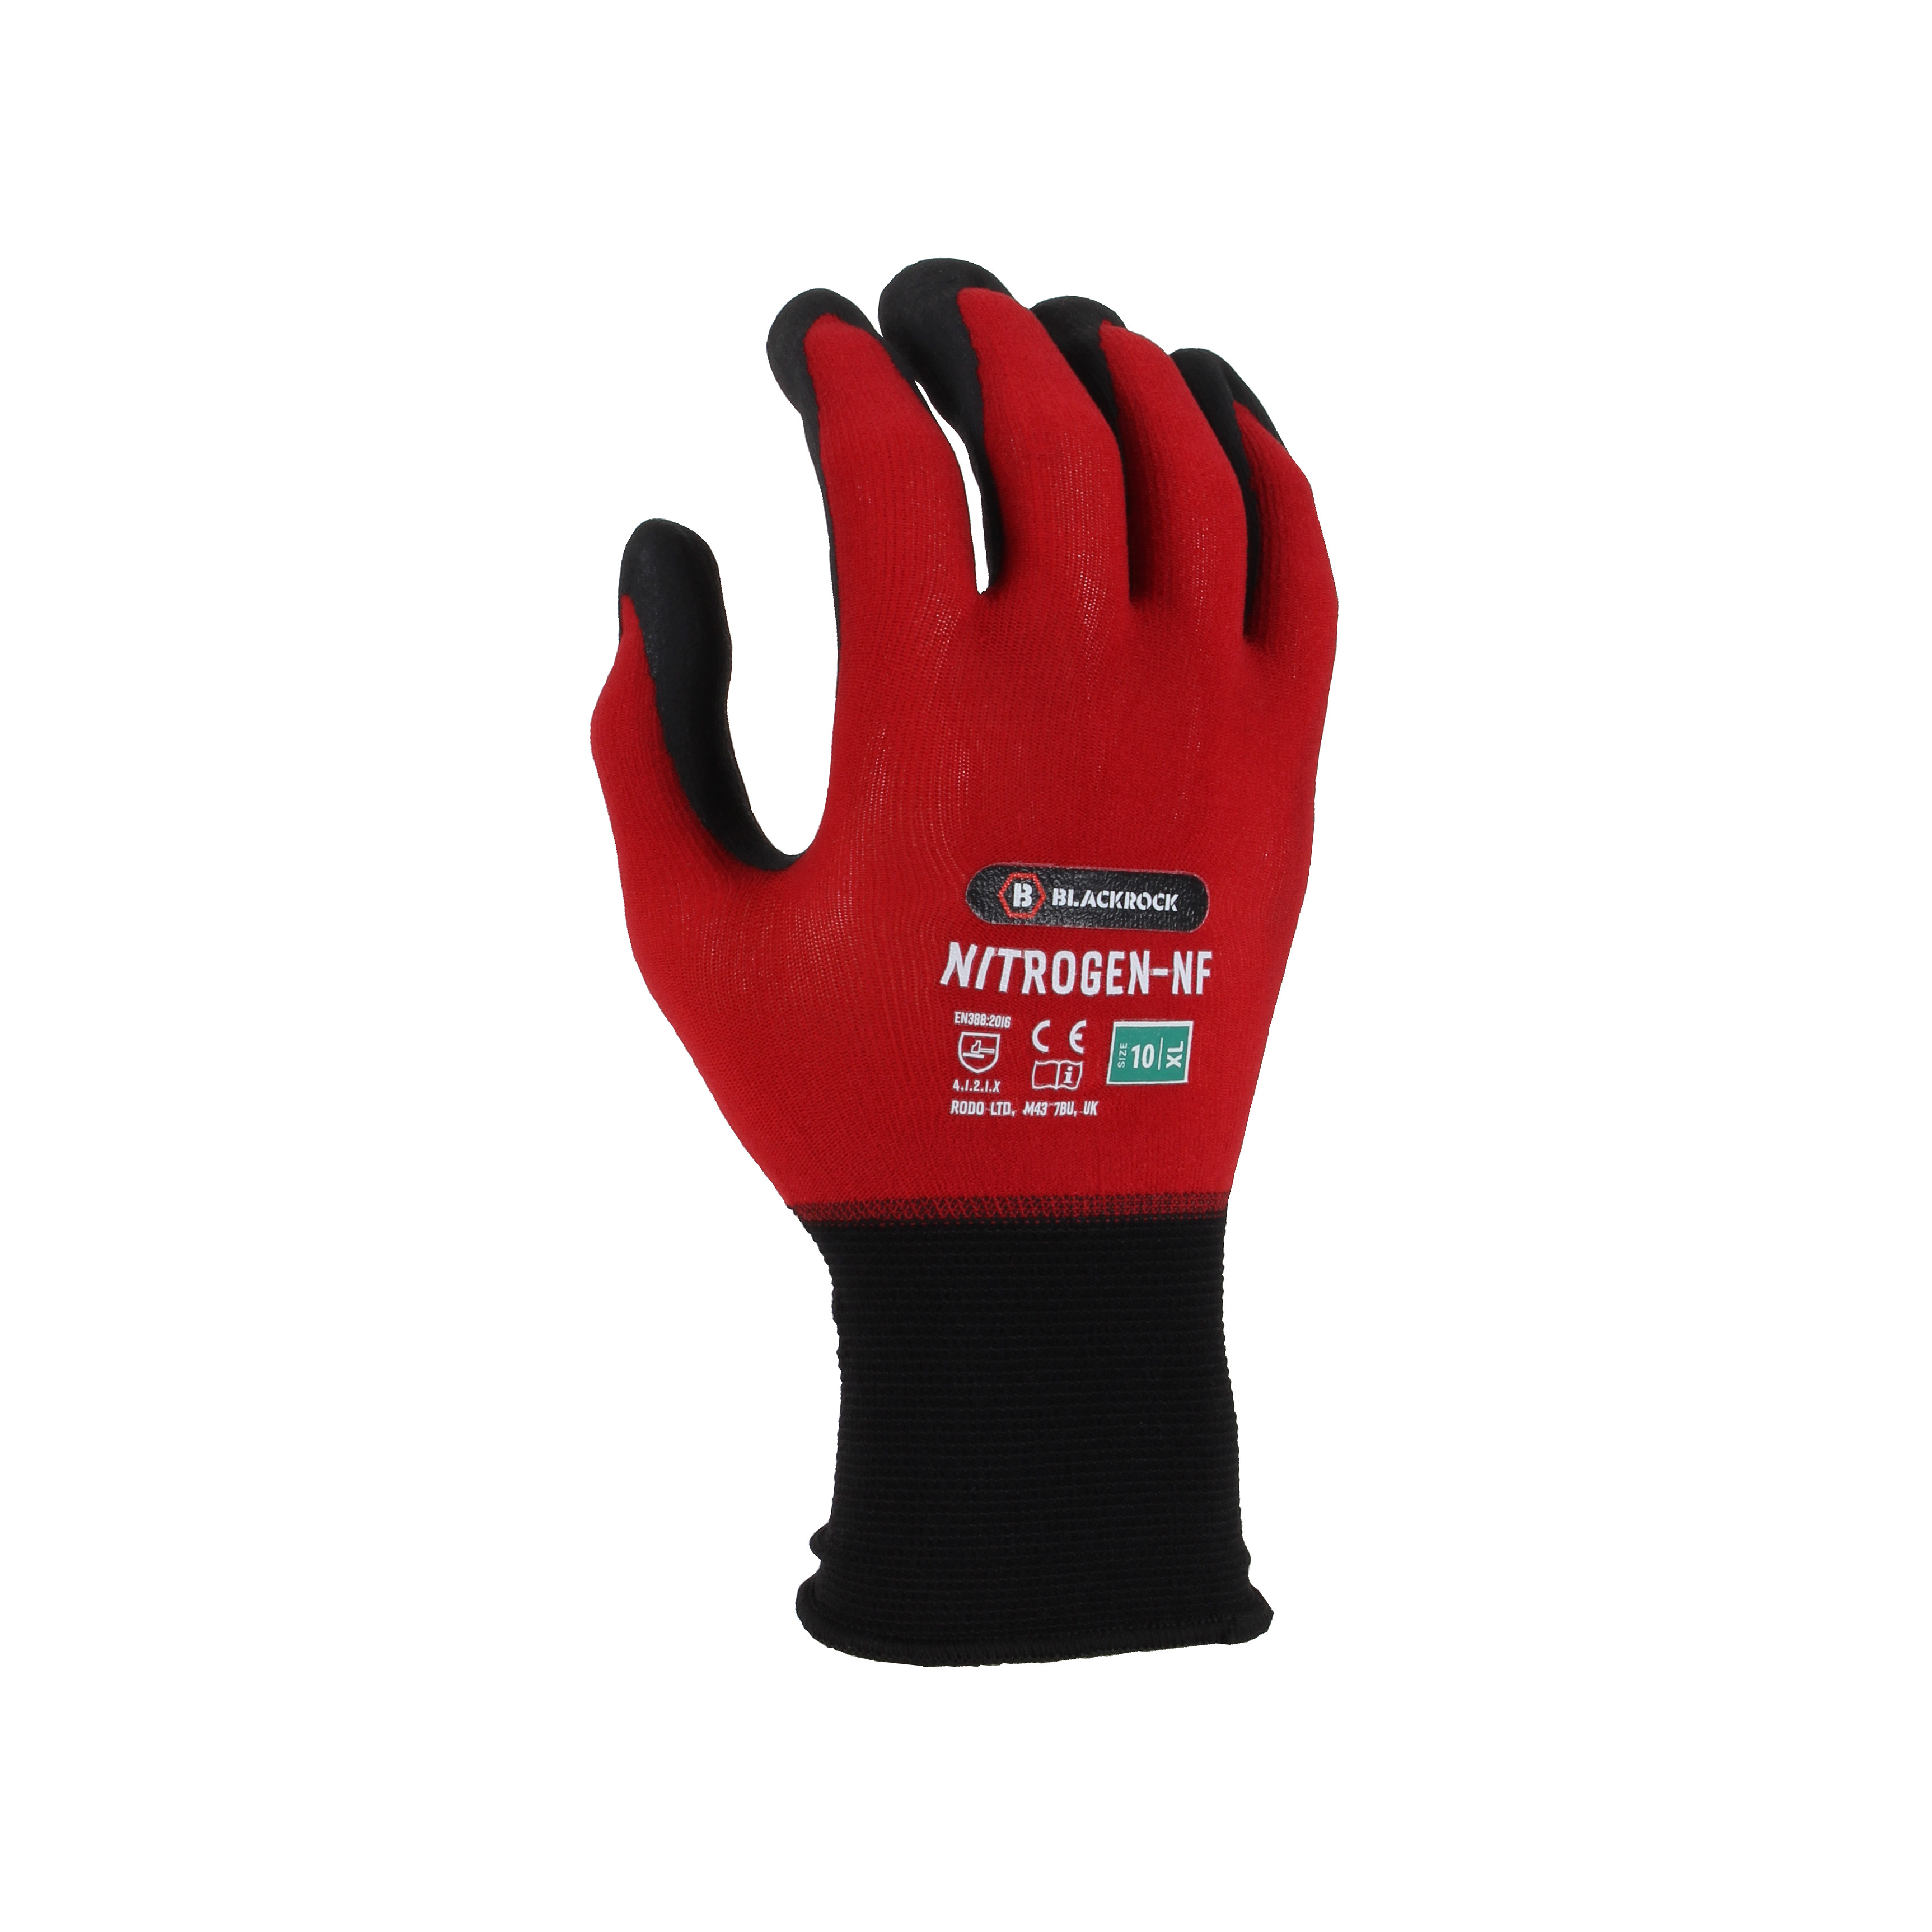 Nitrogen-NF Work Glove